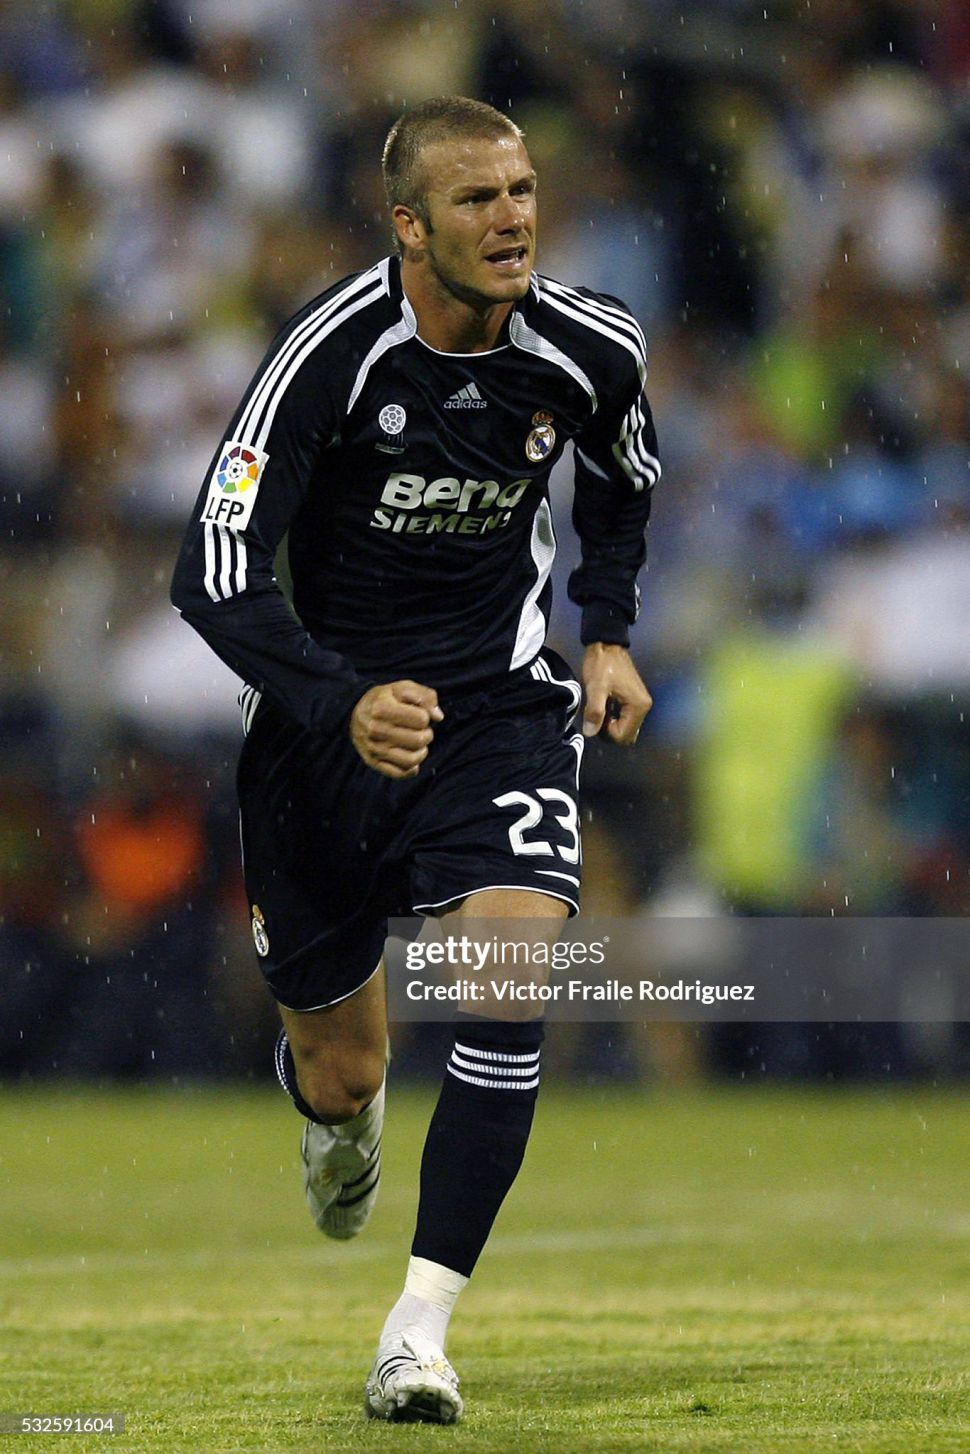 Áo đấu Beckham 23 Real Madrid 2006-2007 away shirt jersey black 060819